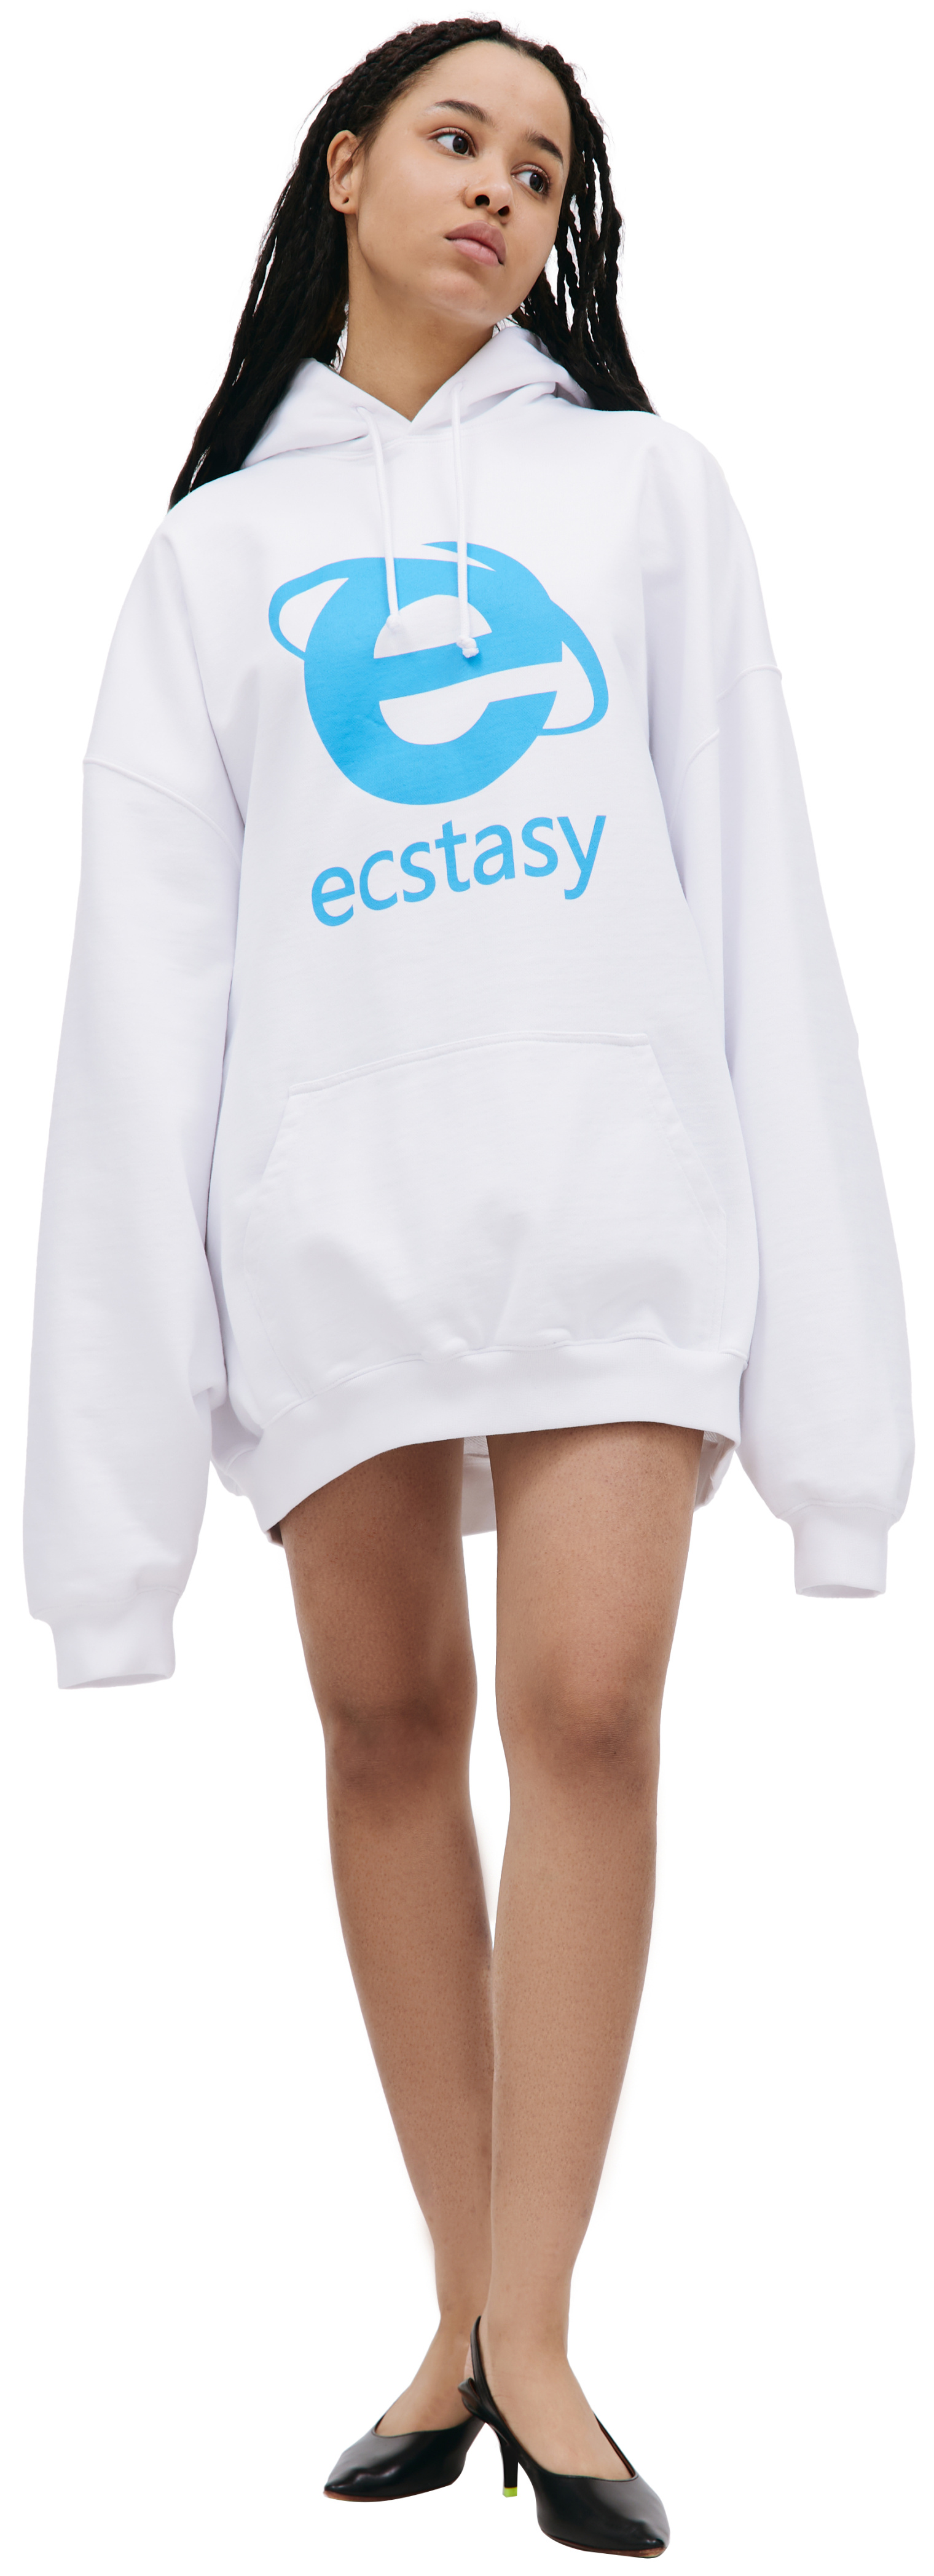 VETEMENTS Ecstasy printed hoodie